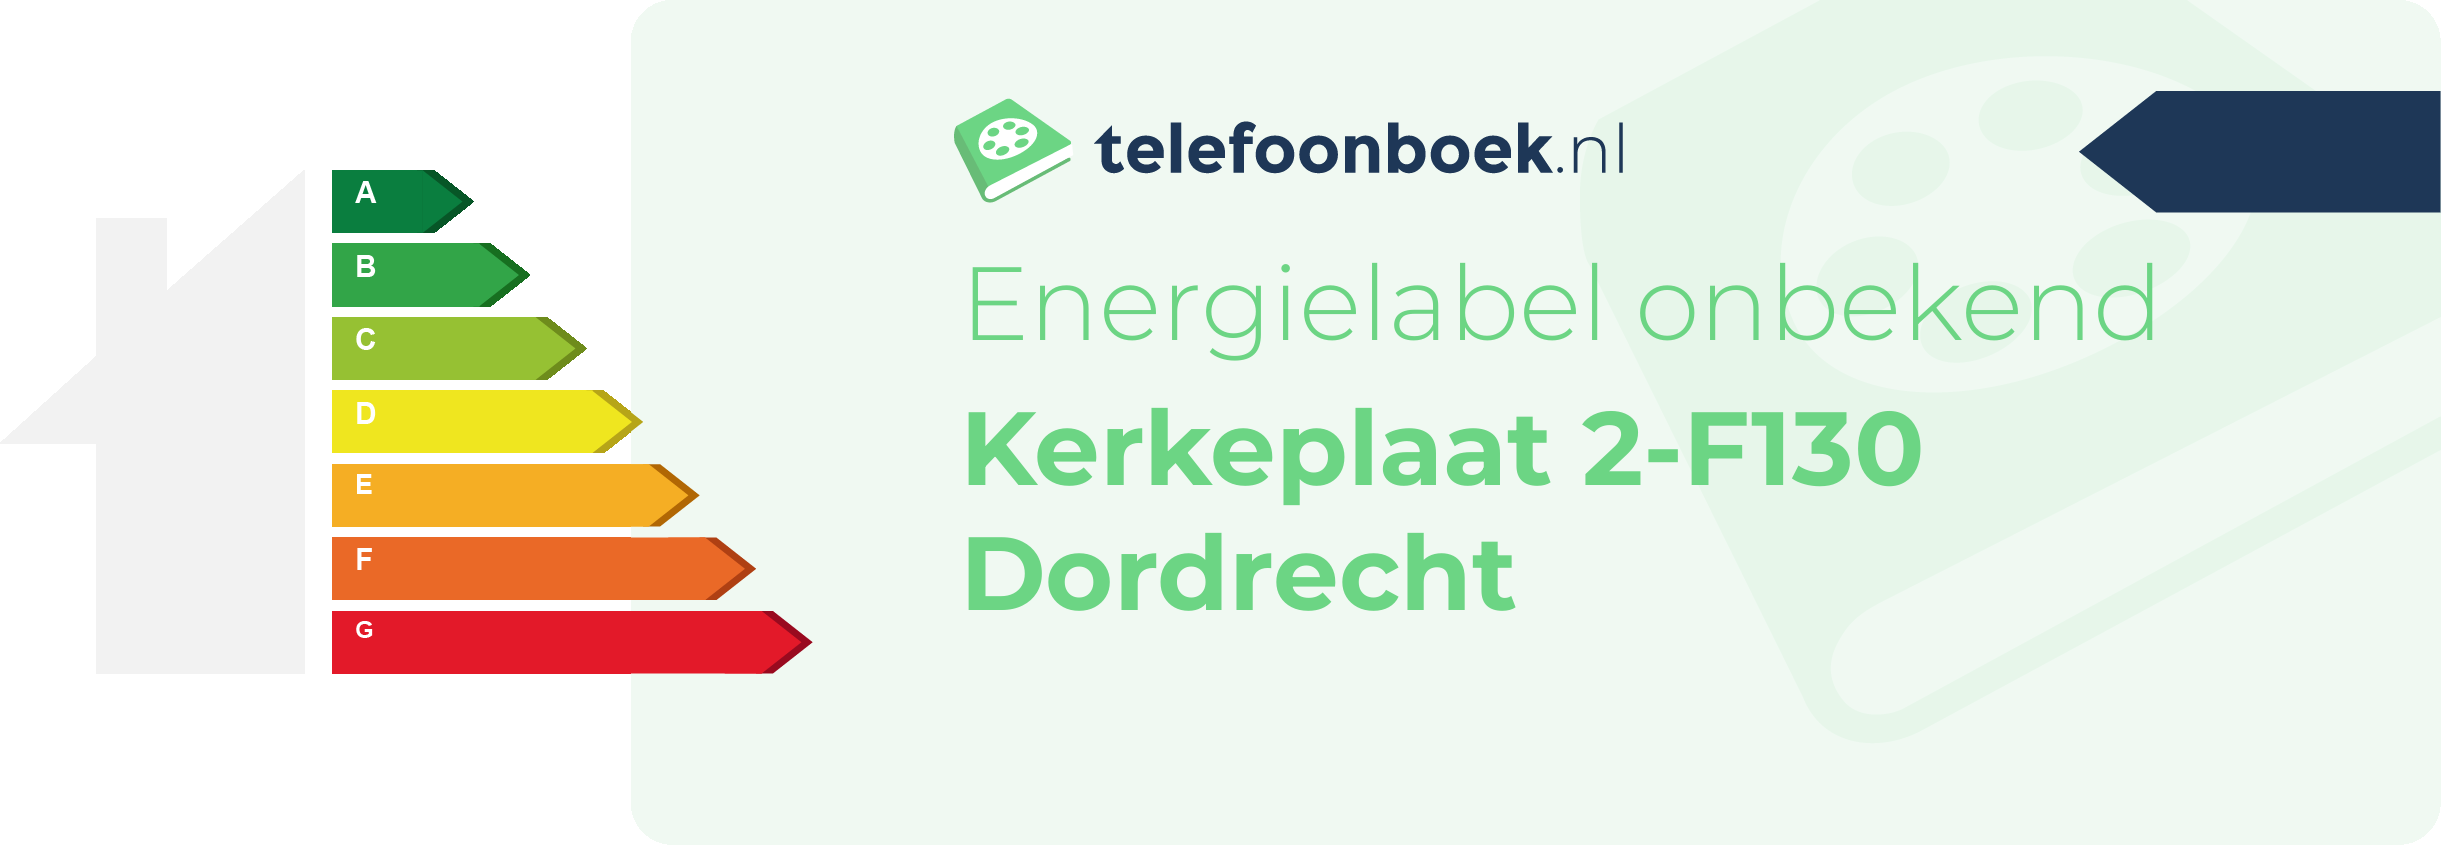 Energielabel Kerkeplaat 2-F130 Dordrecht